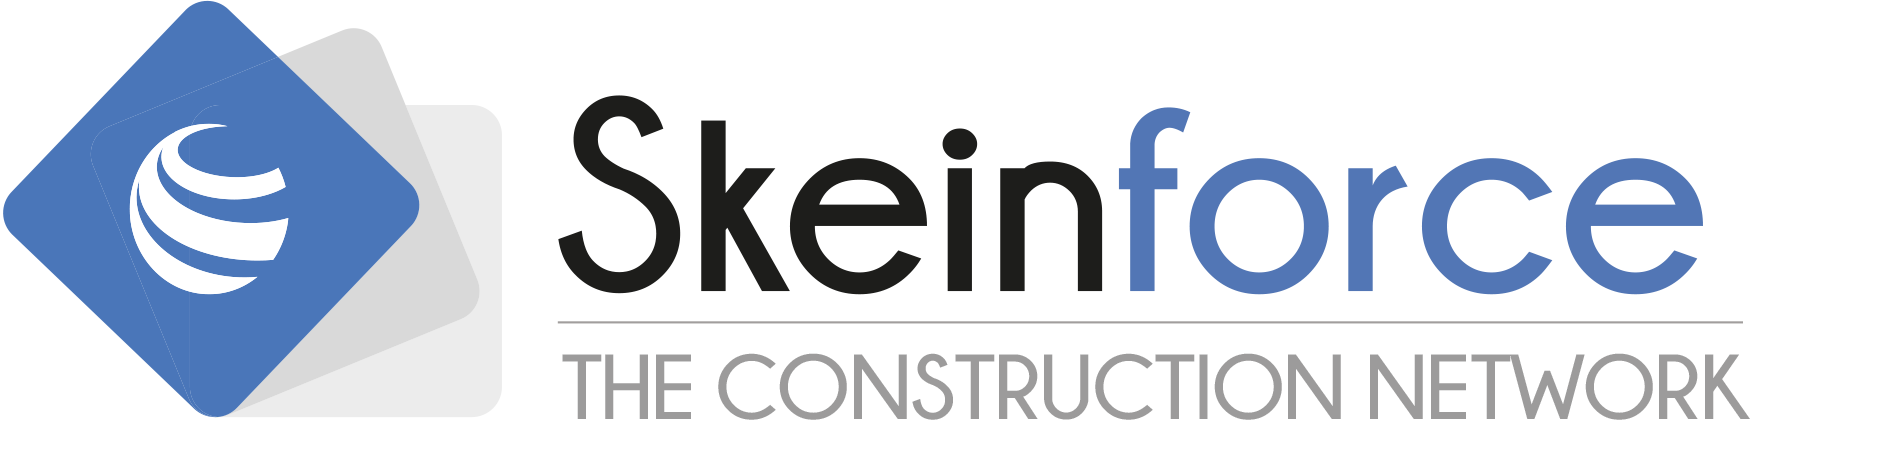 Logo Skeinforce